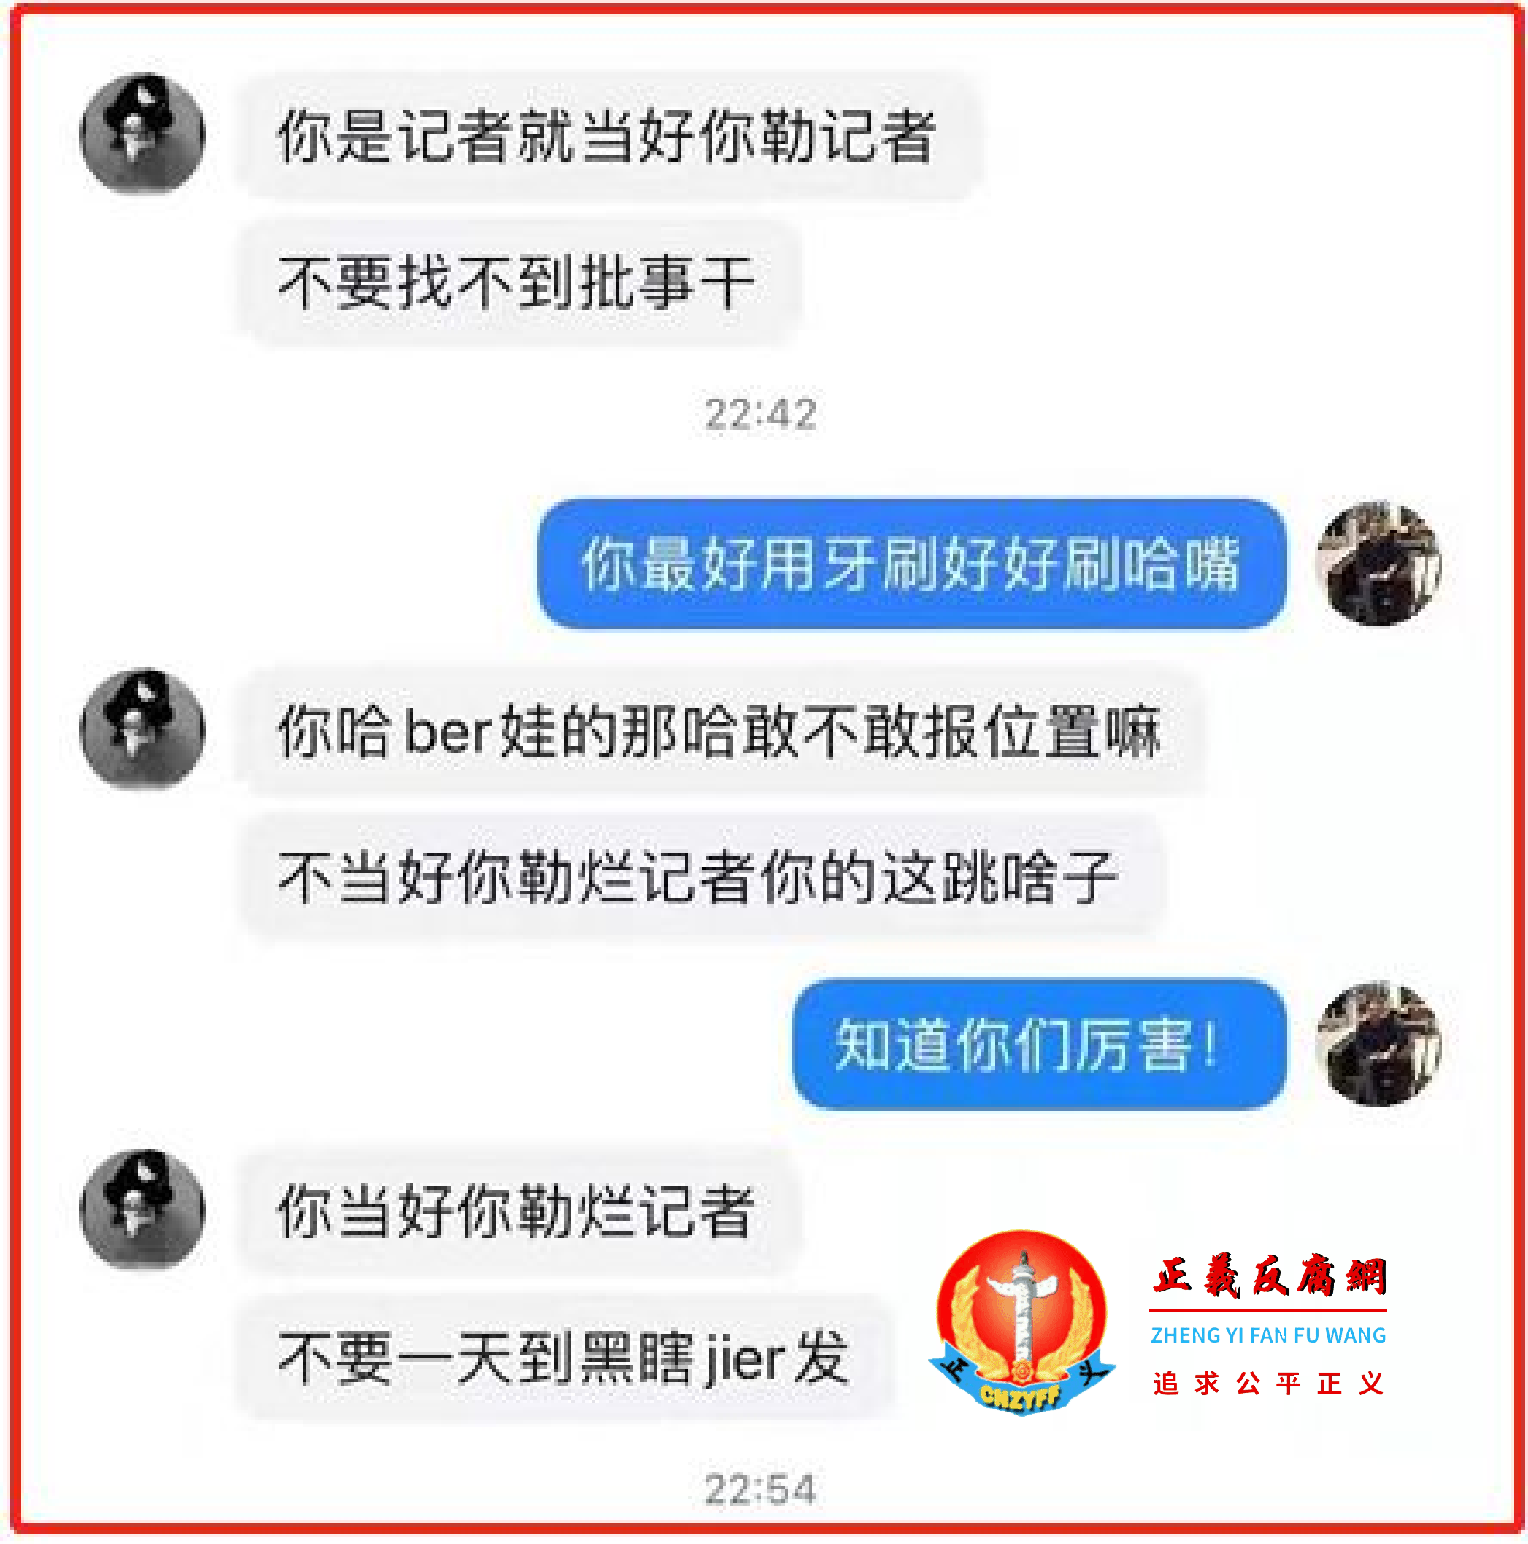 雅安日报记者周代庆因调查周天康溺水案遭余某同伙死亡威胁.png